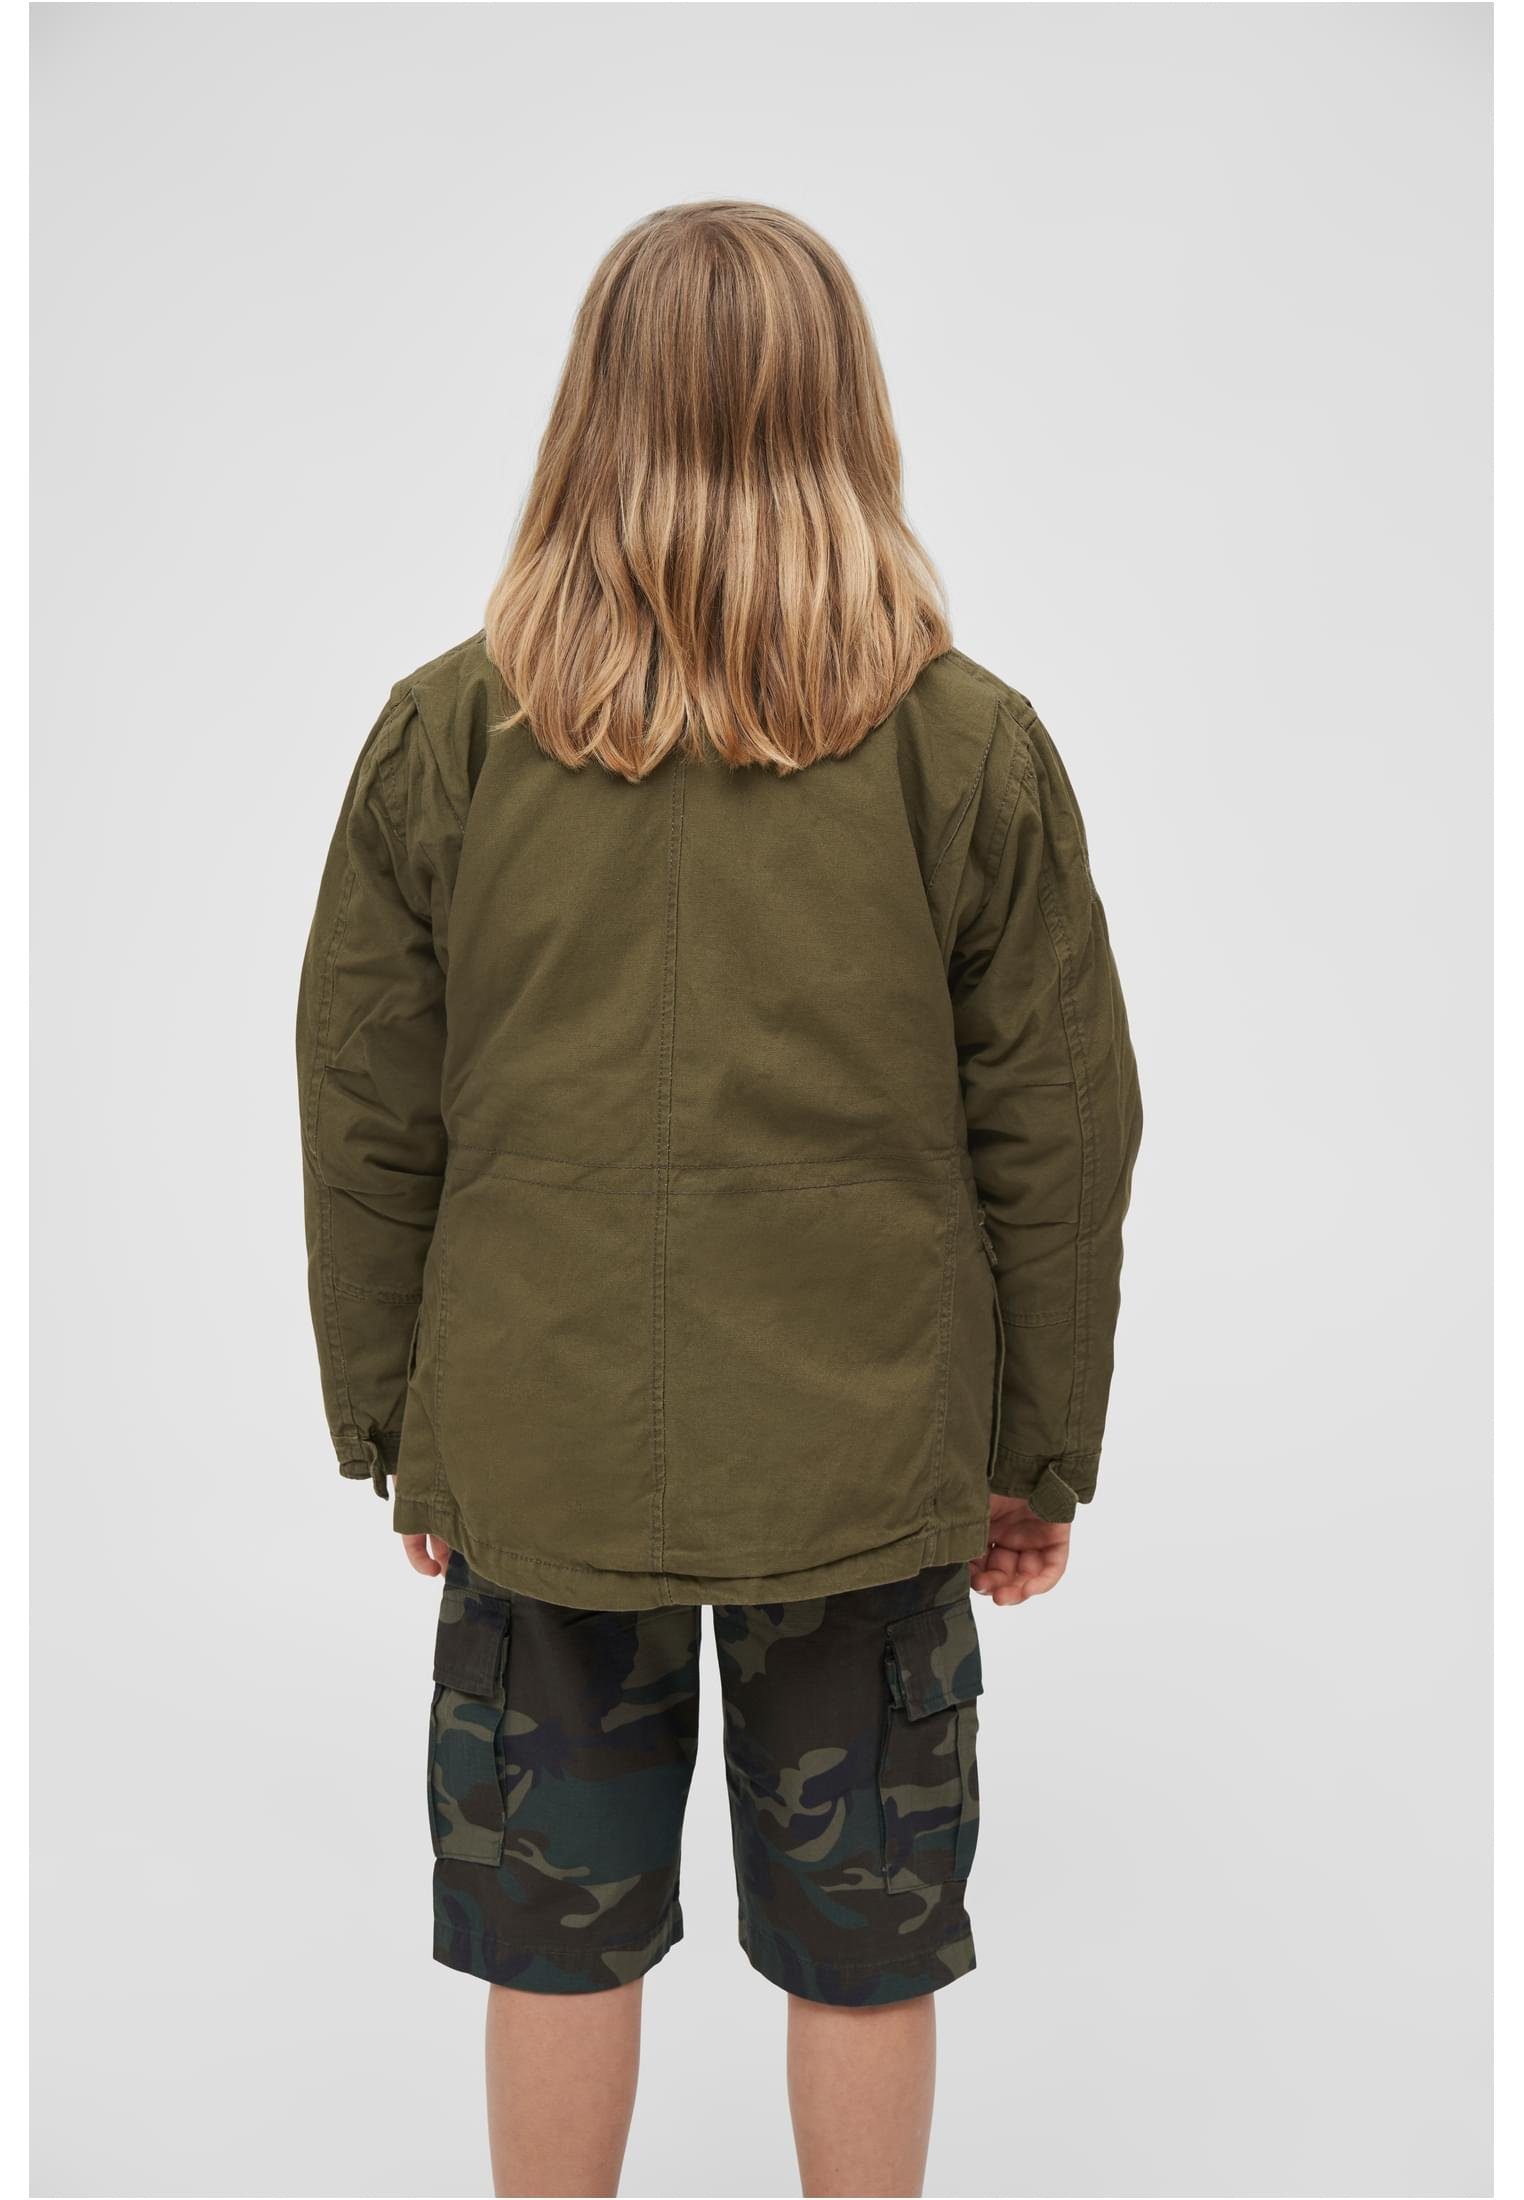 Kinder Kids (Gr. 92 - 146) Brandit Fieldjacket M65 Giant Jacke